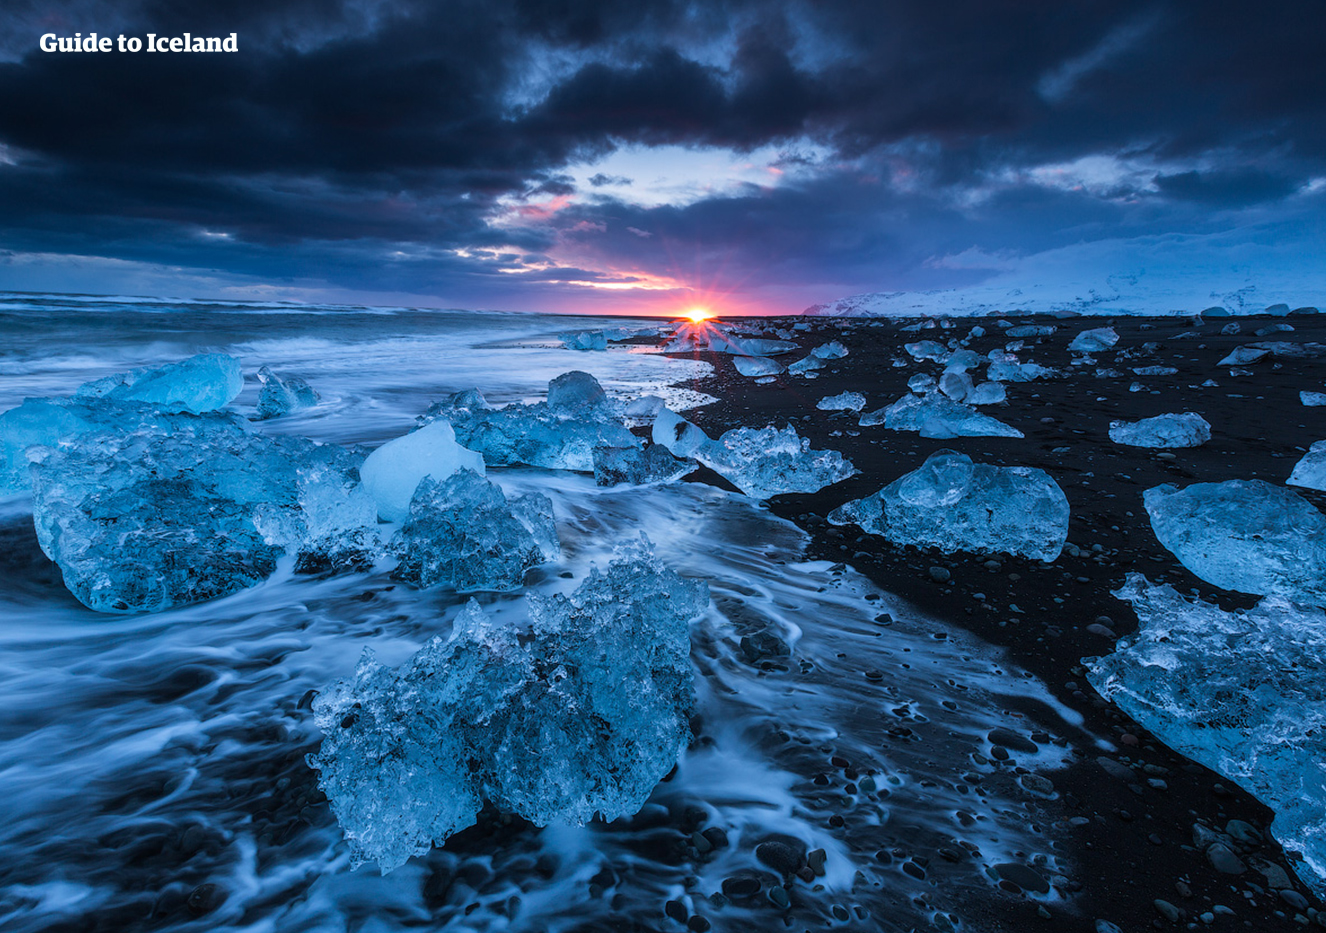 Iceberg luccicanti mentre il sole tramonta sulla spiaggia dei DIamanti, vicino alla laguna glaciale di Jökulsárlón.